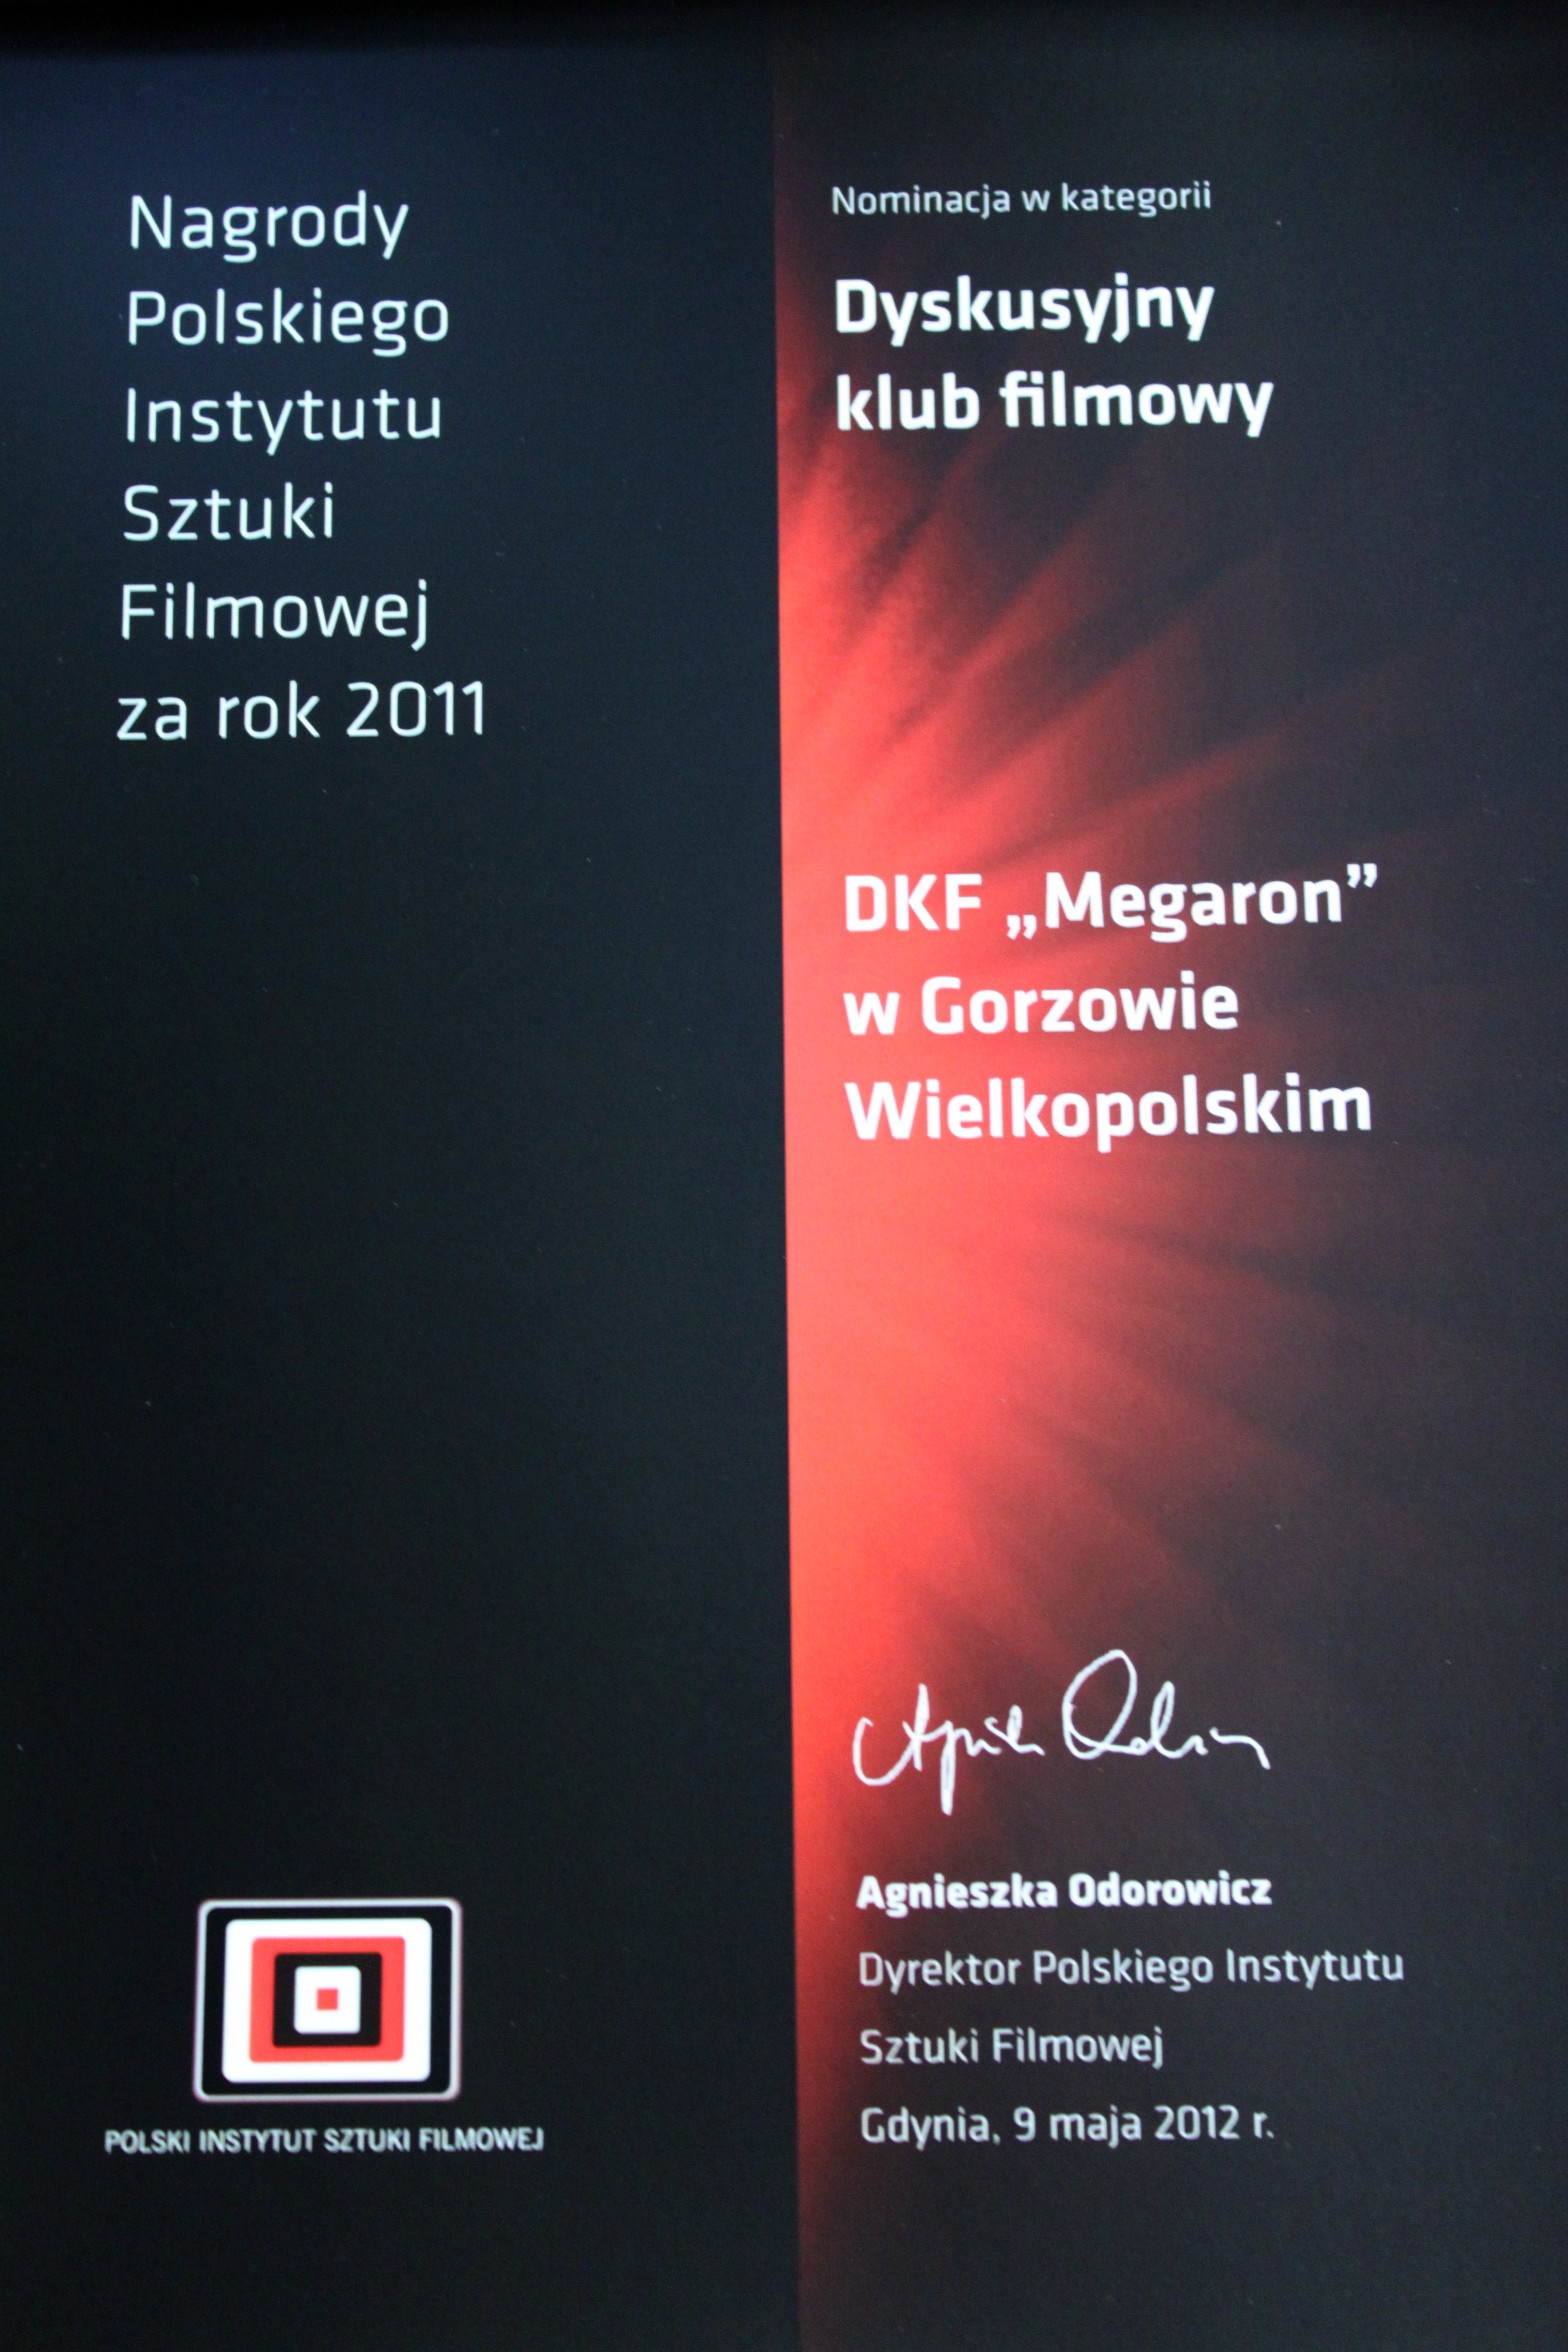 Nominacja DKF Megaron do nagrody PISF za rok 2011